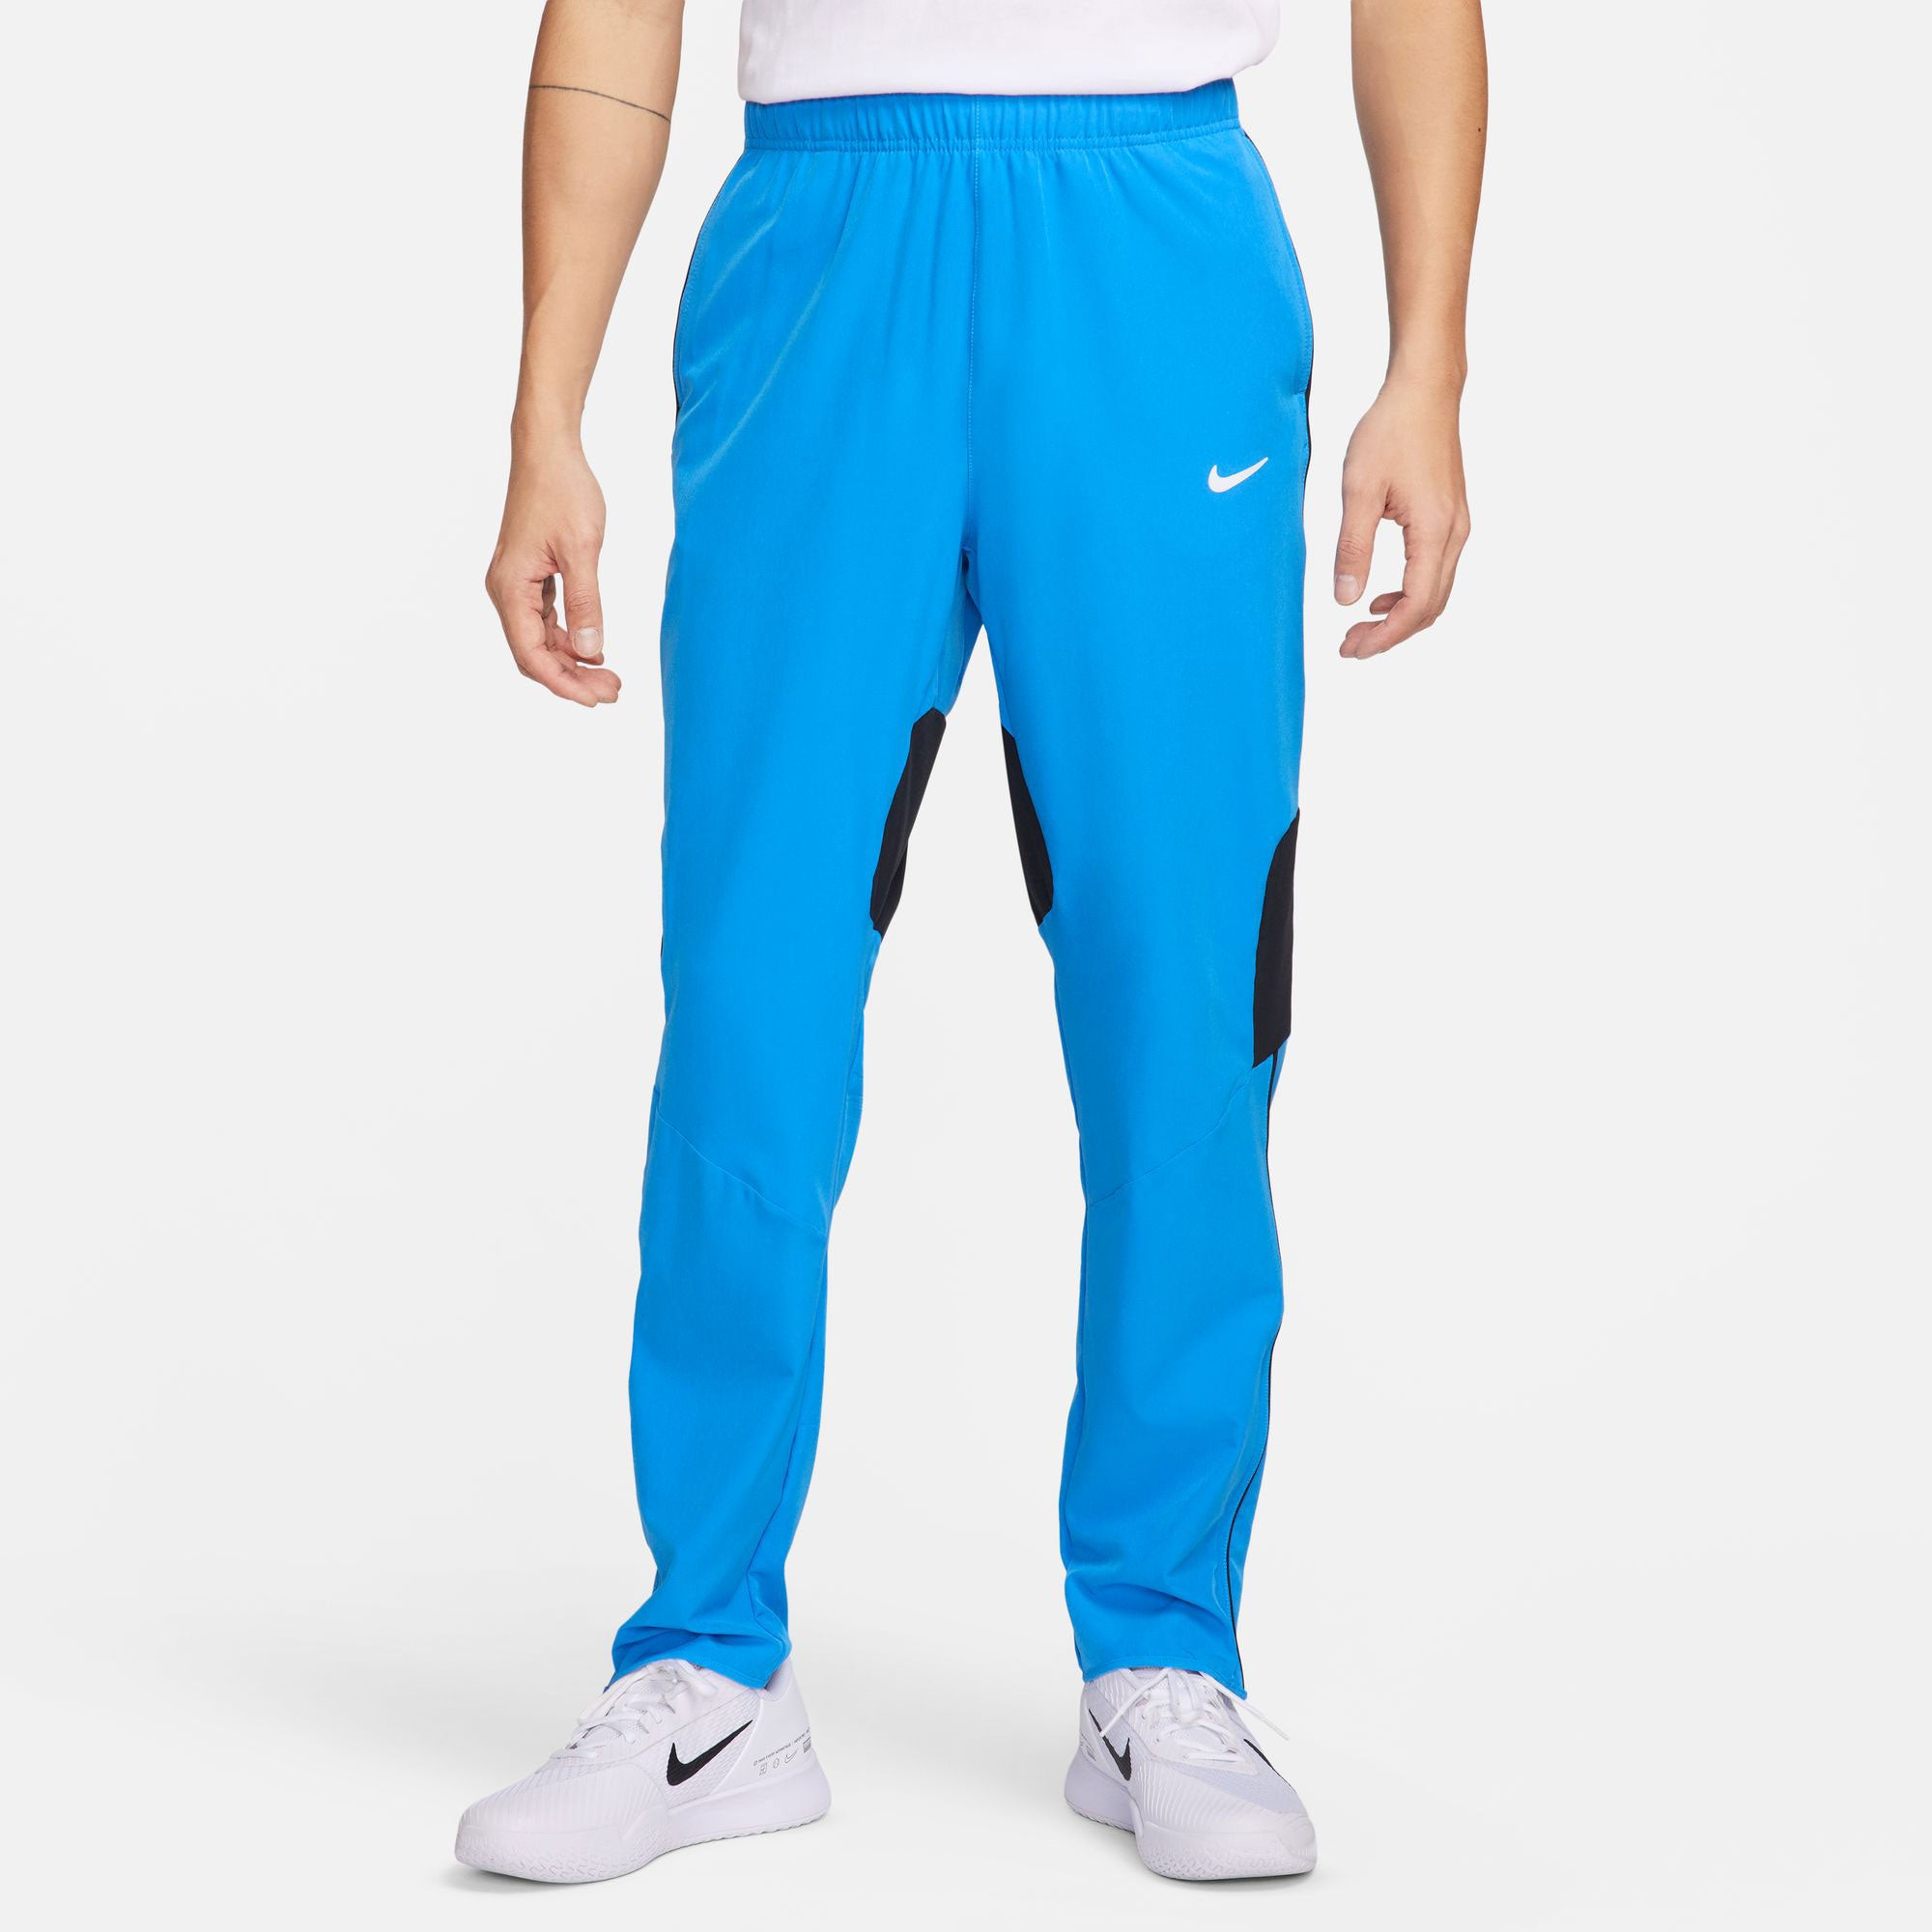 NikeCourt Advantage Men's Dri-FIT Tennis Pants - Blue (1)